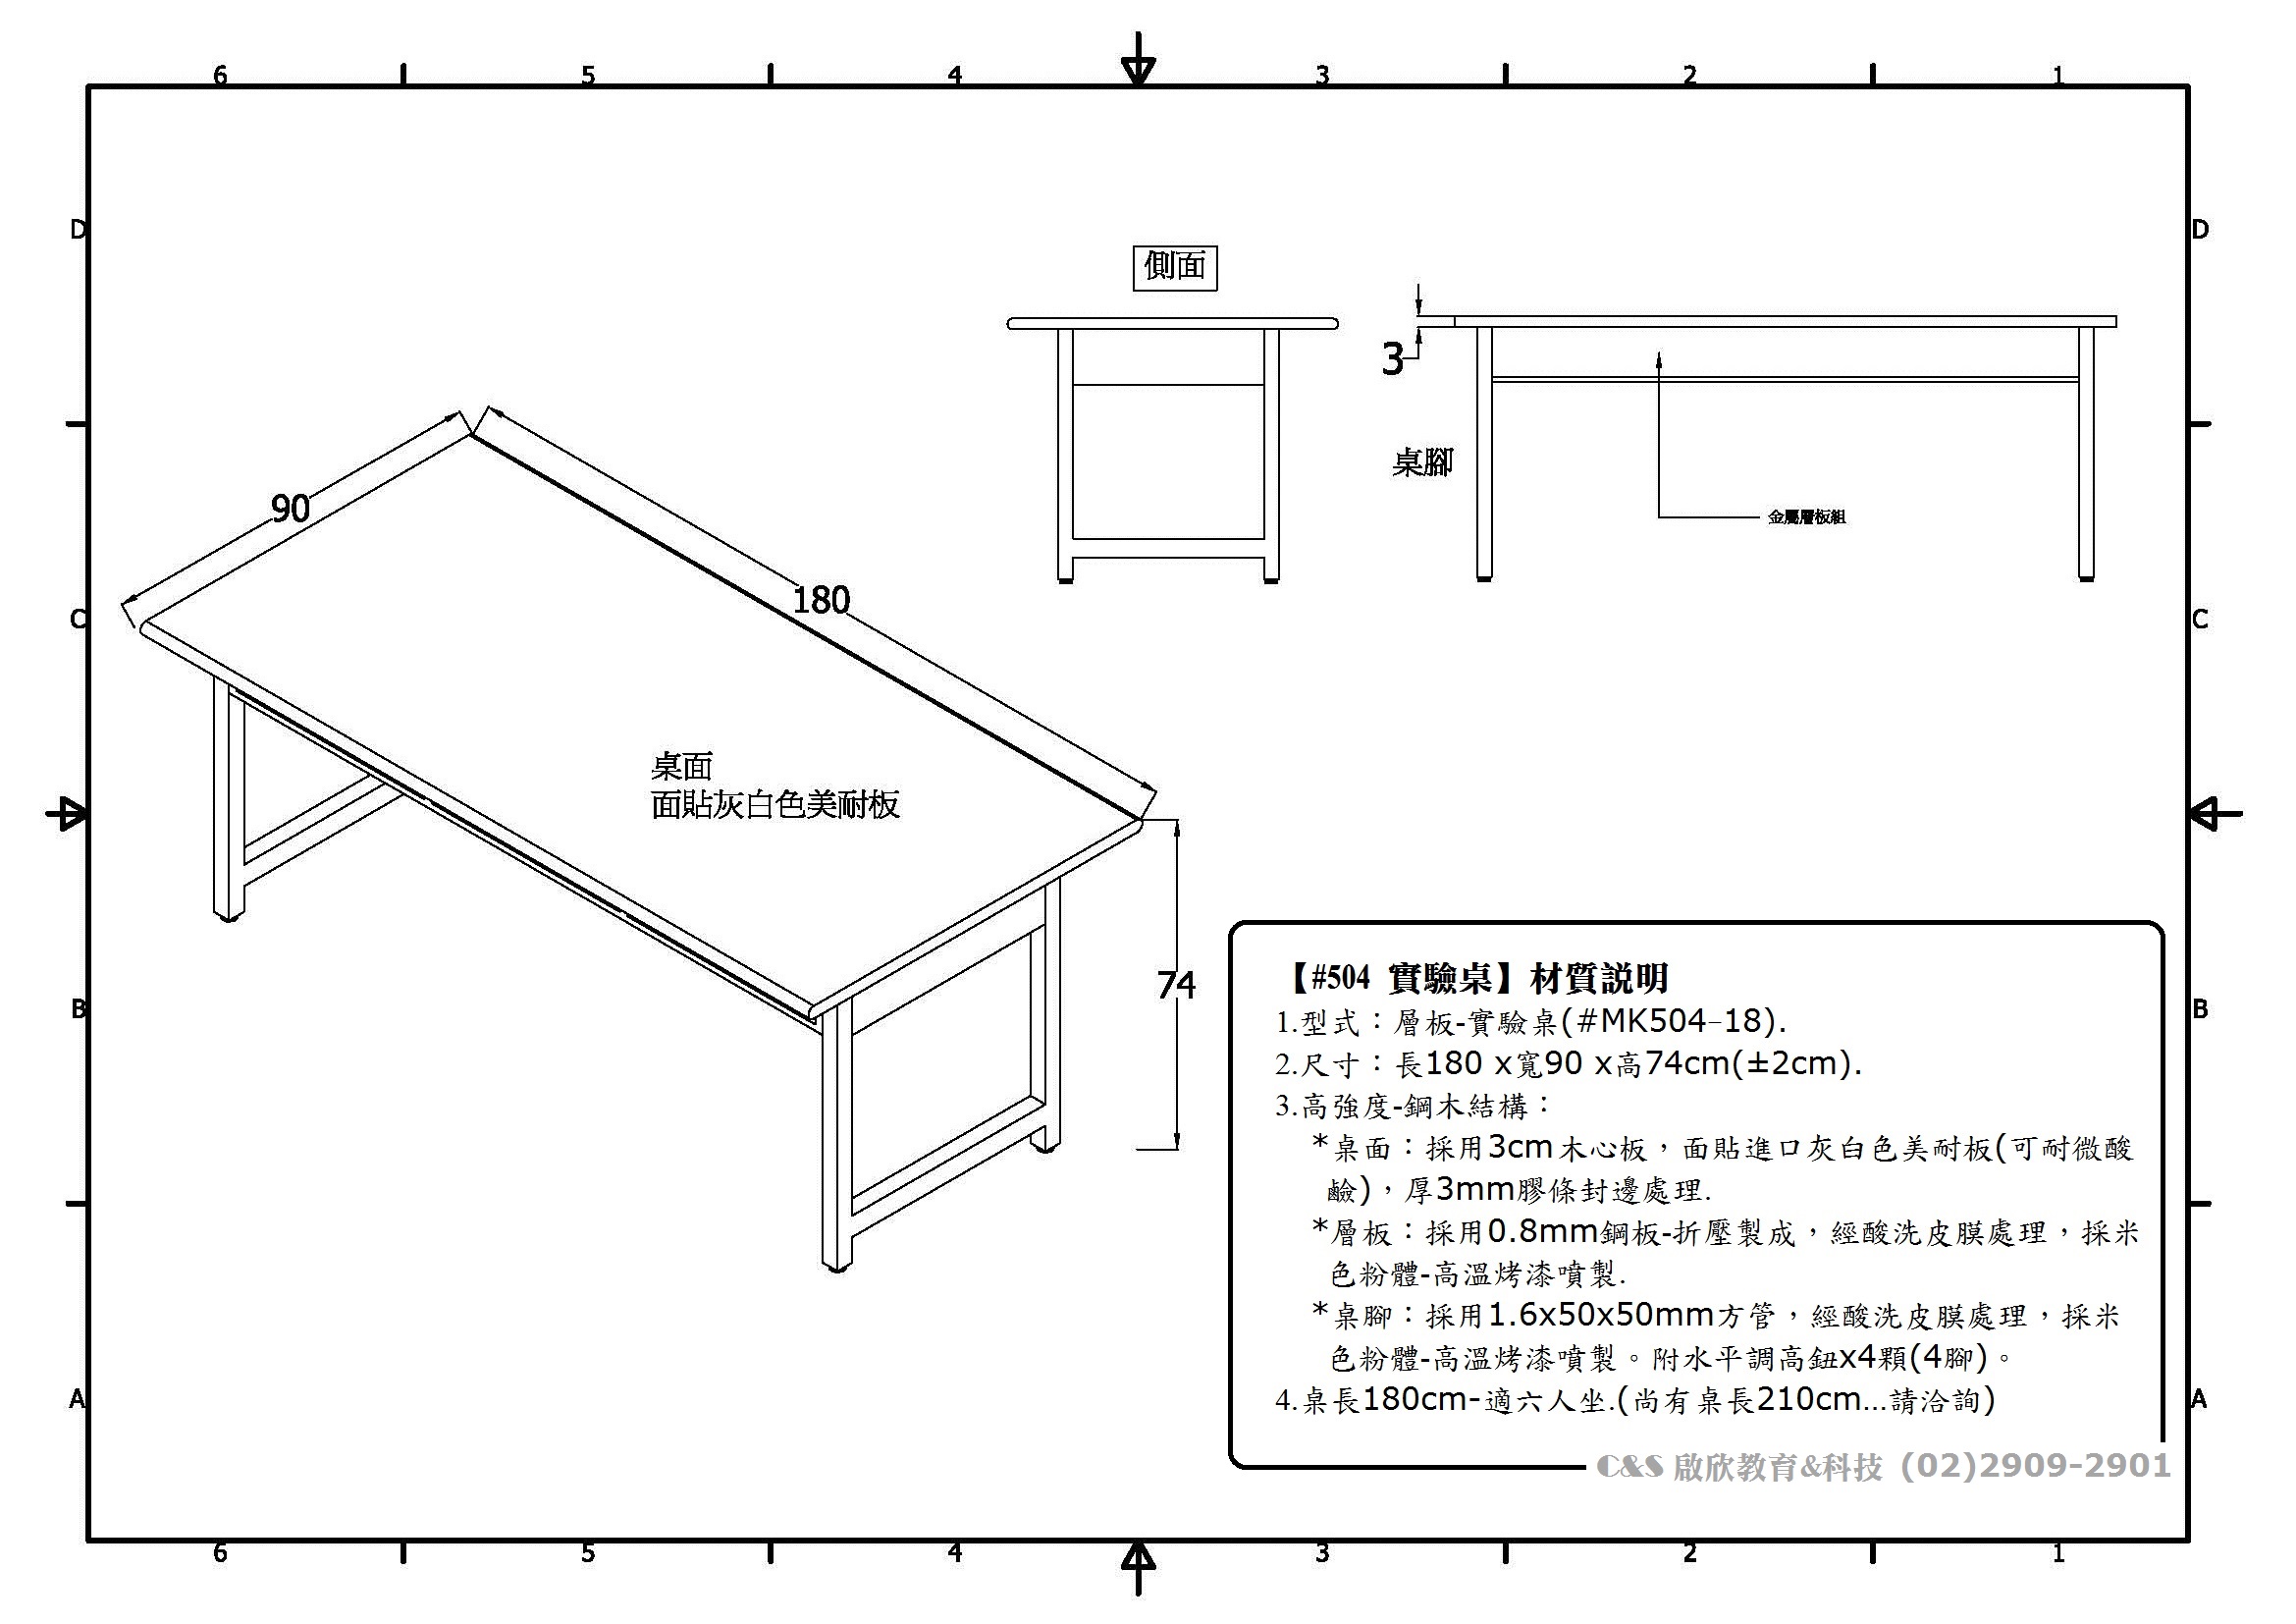 理化【實驗桌#504】...規格尺寸-3D示意圖..翻製必究!!